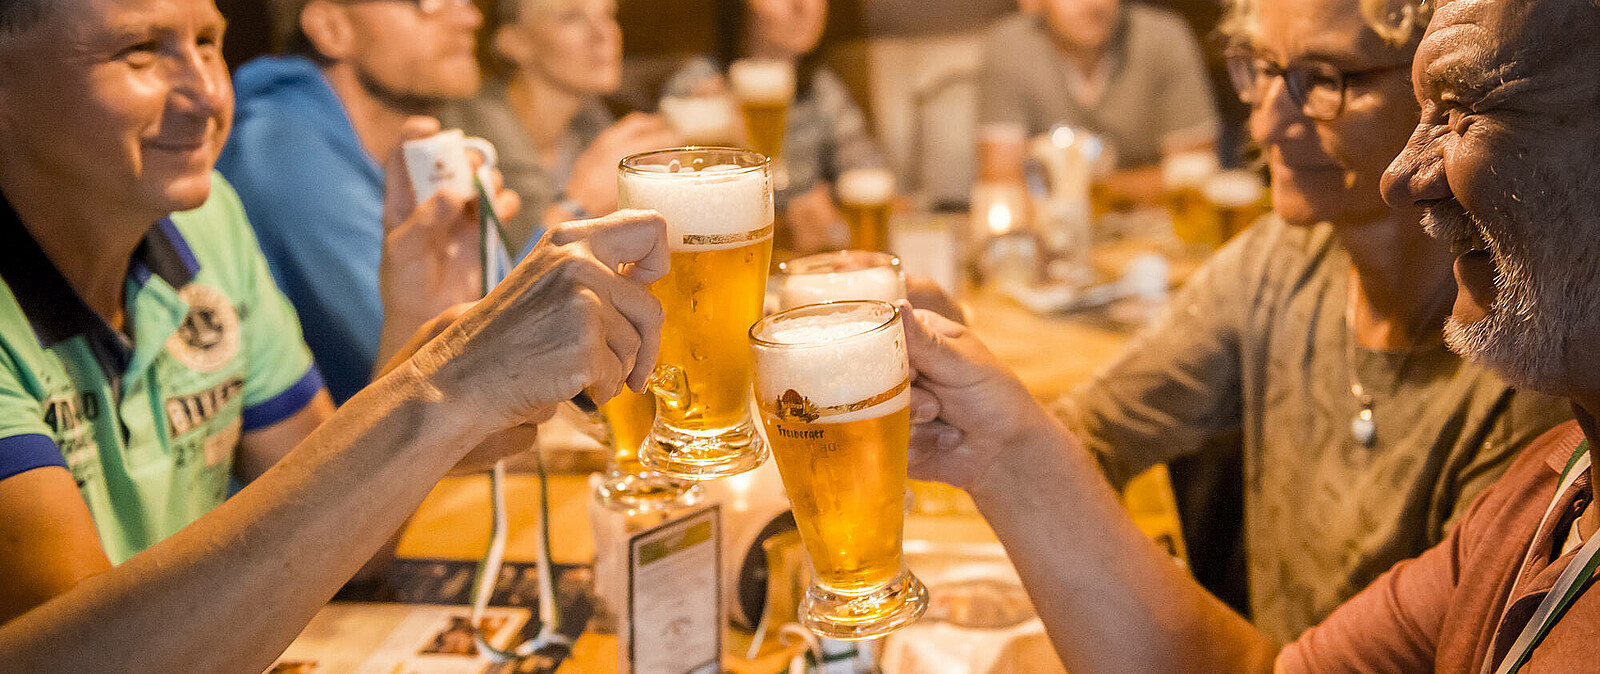 Ein gemütlicher Abend in Dresden, ein gutes Bier und Anekdoten vom Braumeister. So schön ist eine Bierexpedition im Rahmen unseres Ausflugs Braumeisters beste Schlückchen - unsere Bierführung in Dresden